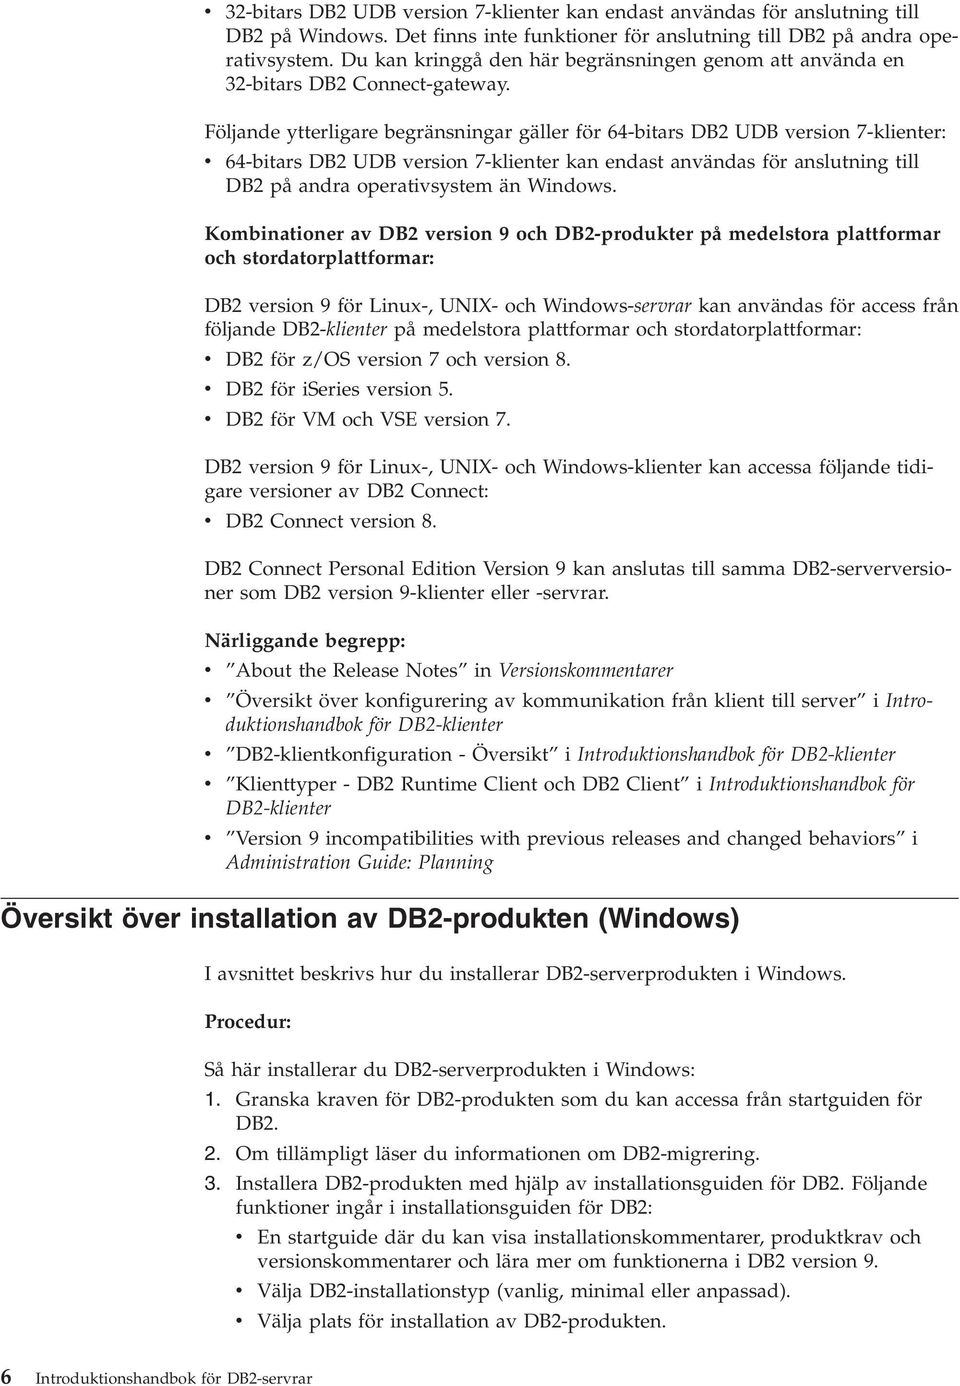 Följande ytterligare begränsningar gäller för 64-bitars DB2 UDB version 7-klienter: v 64-bitars DB2 UDB version 7-klienter kan endast användas för anslutning till DB2 på andra operativsystem än